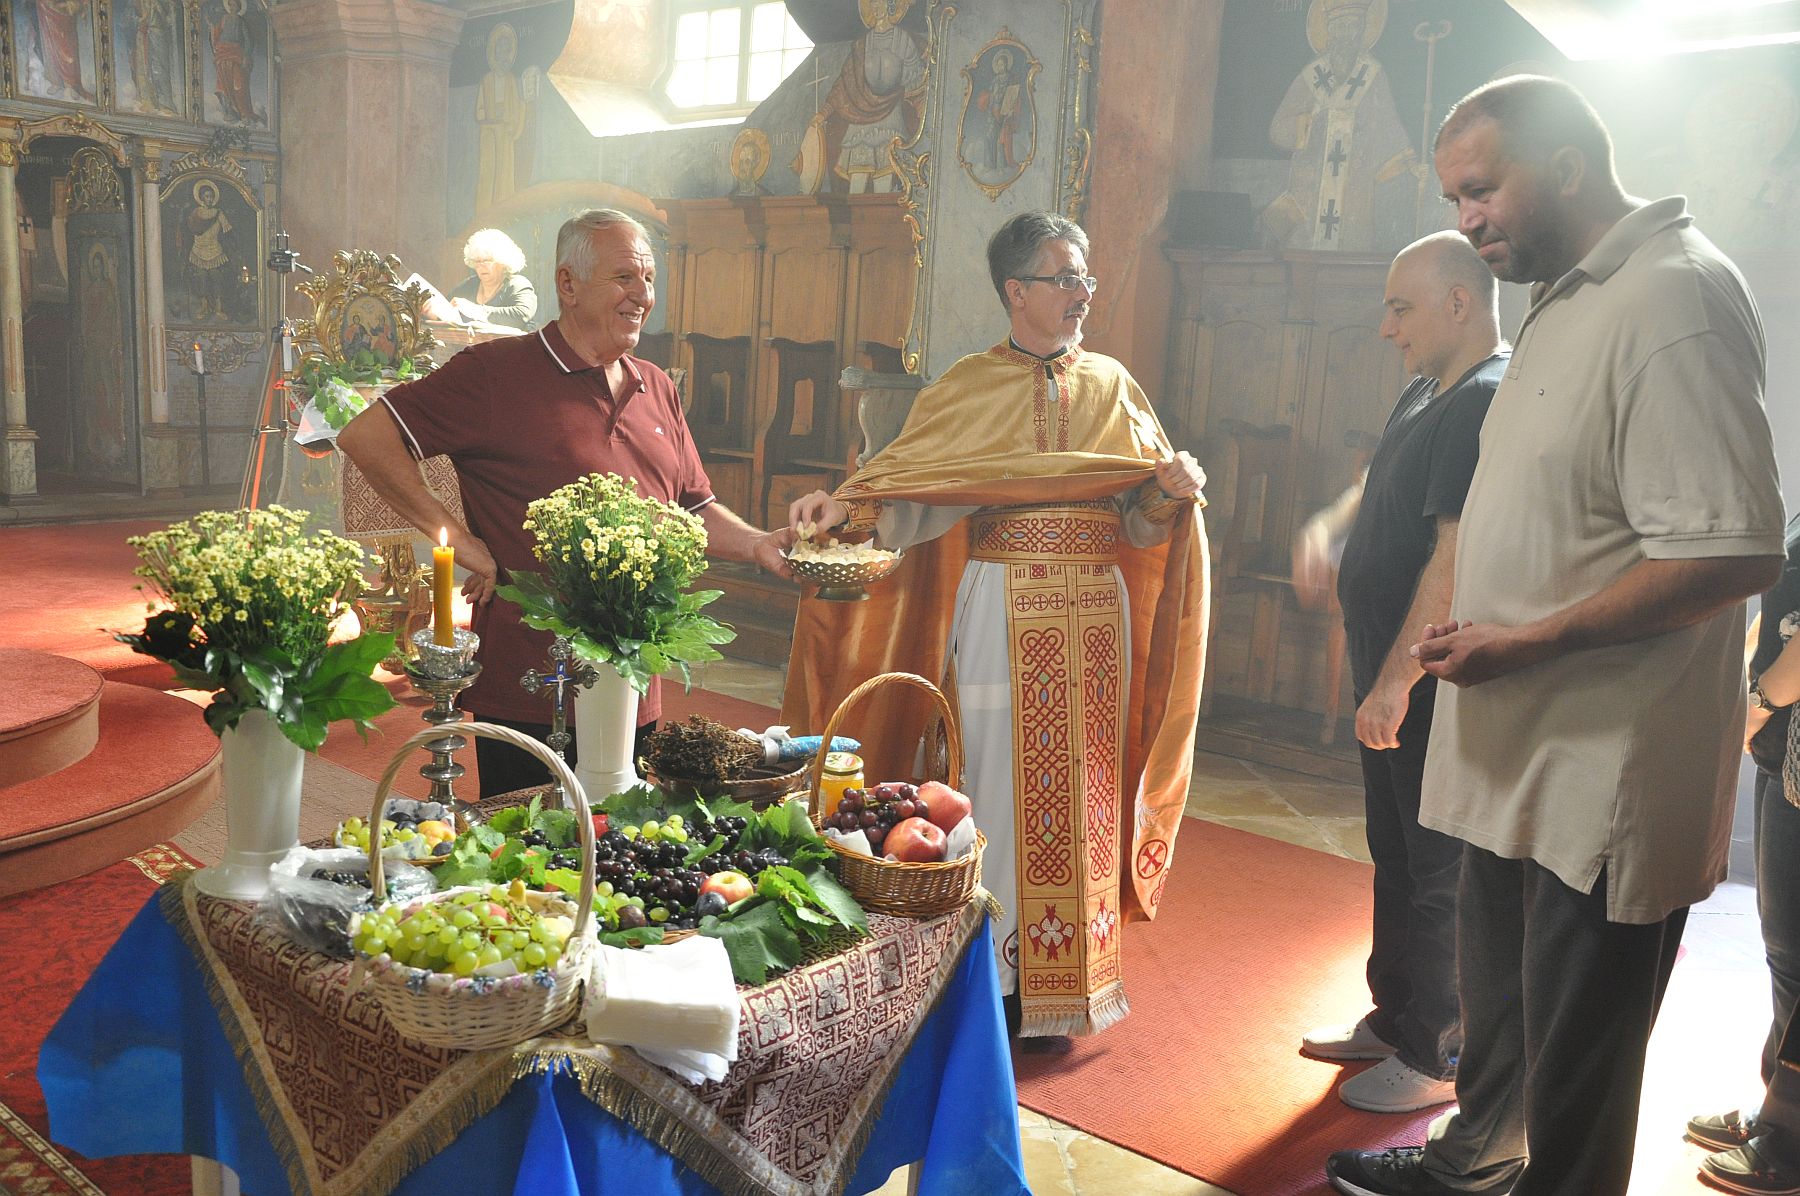 Szőlőt és gyümölcsöket szenteltek Urunk színeváltozása napján a szerb templomban